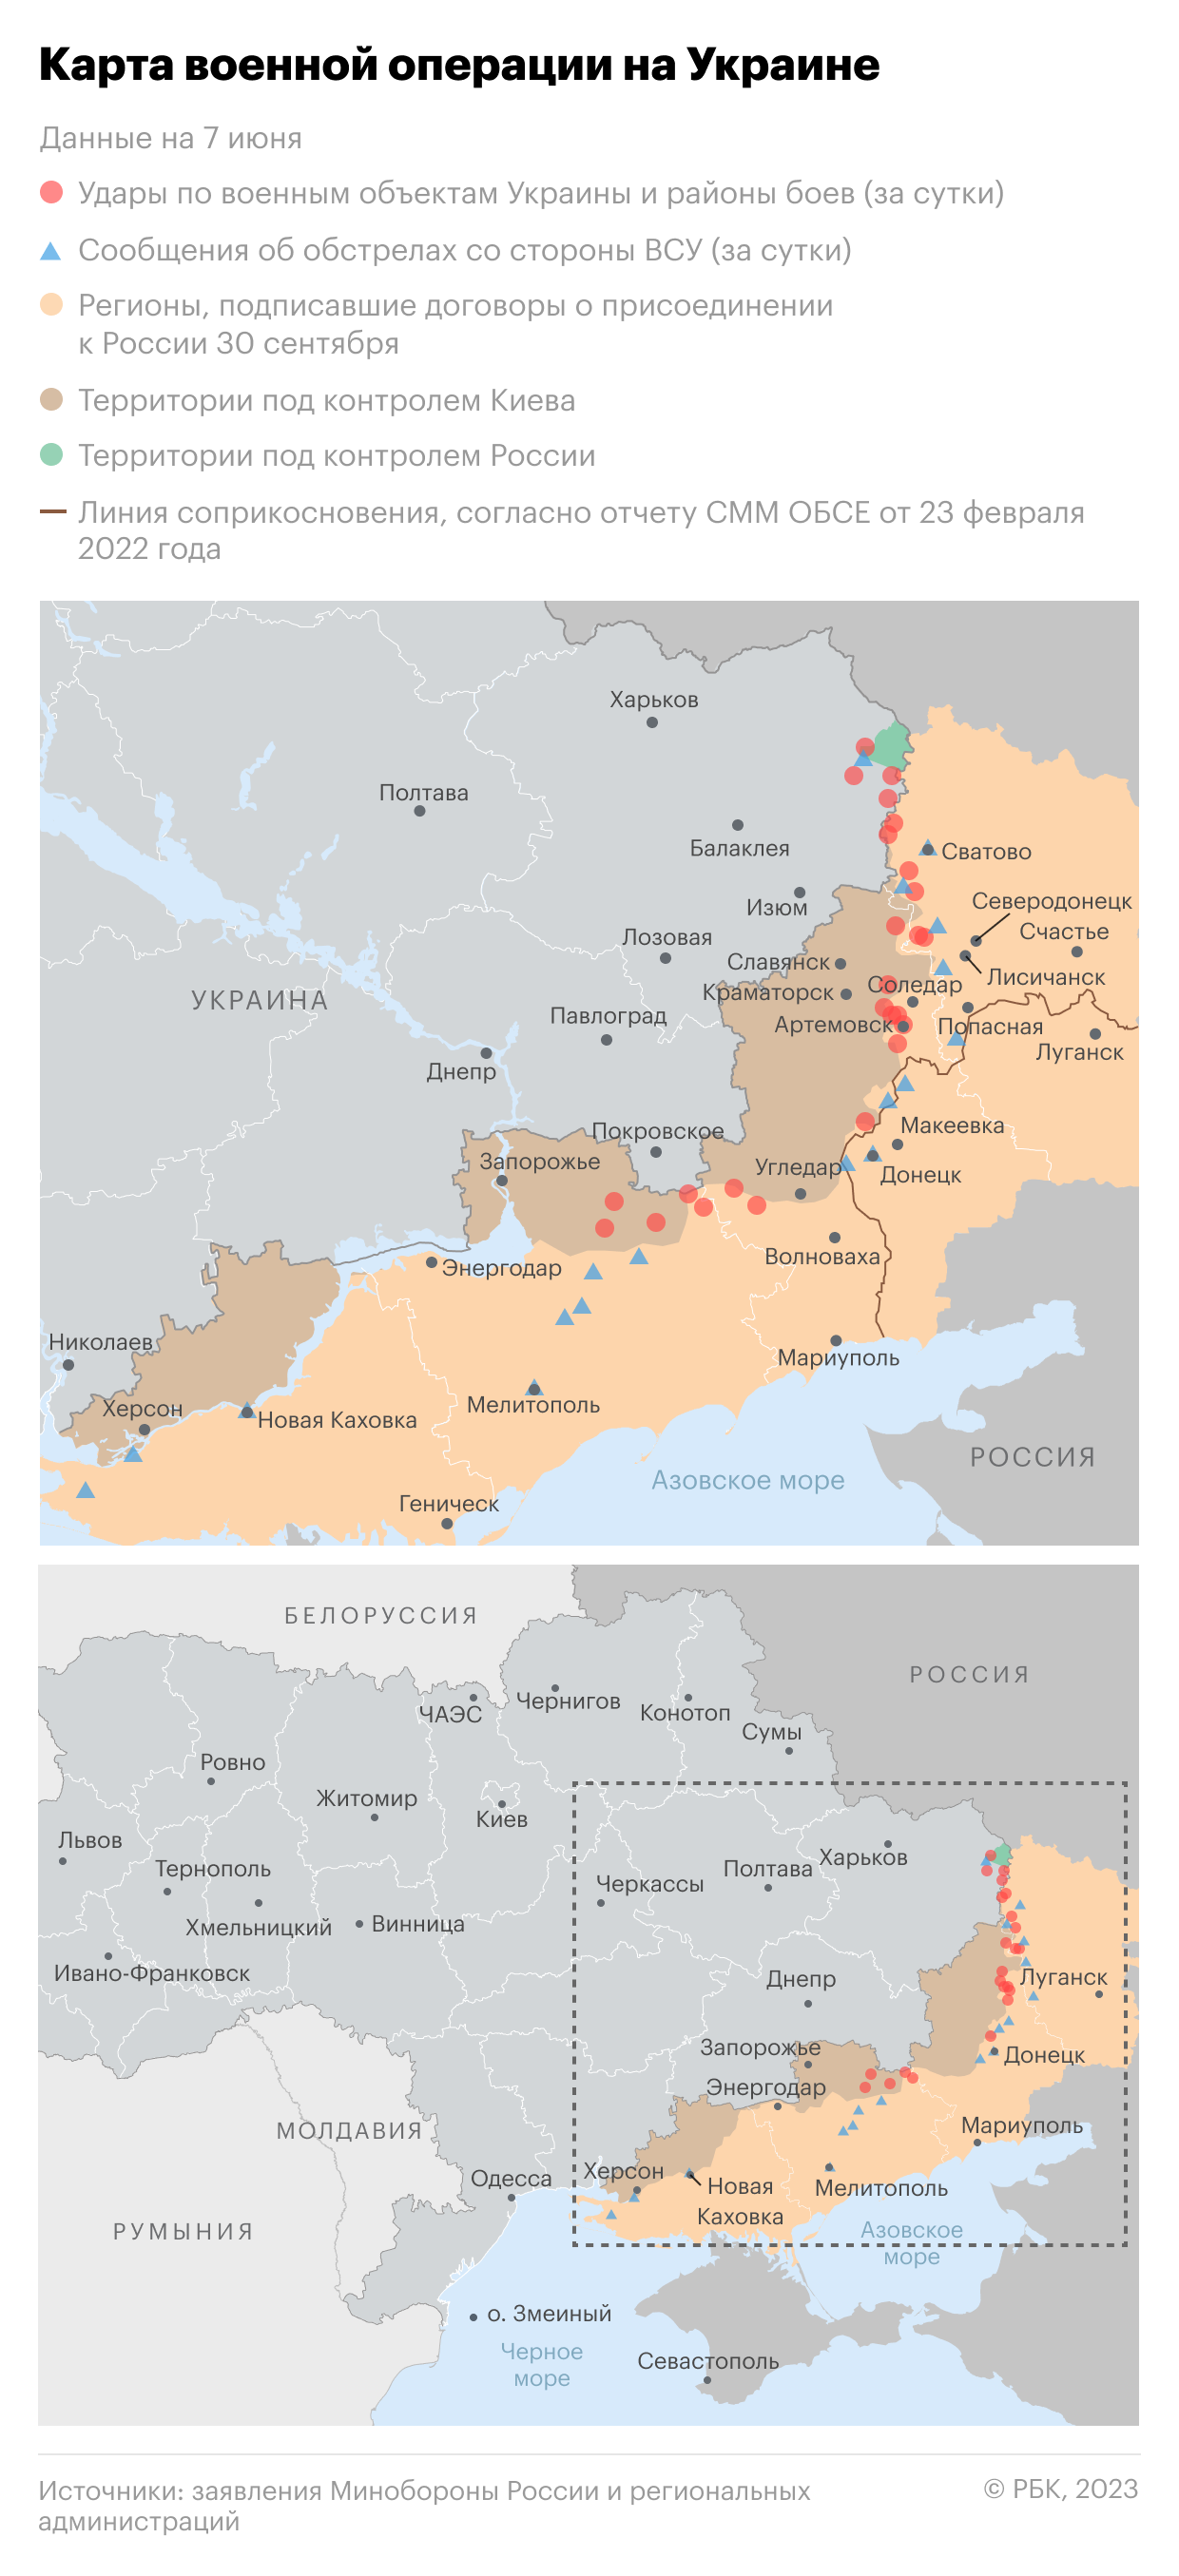 Военная операция на Украине. Карта на 7 июня